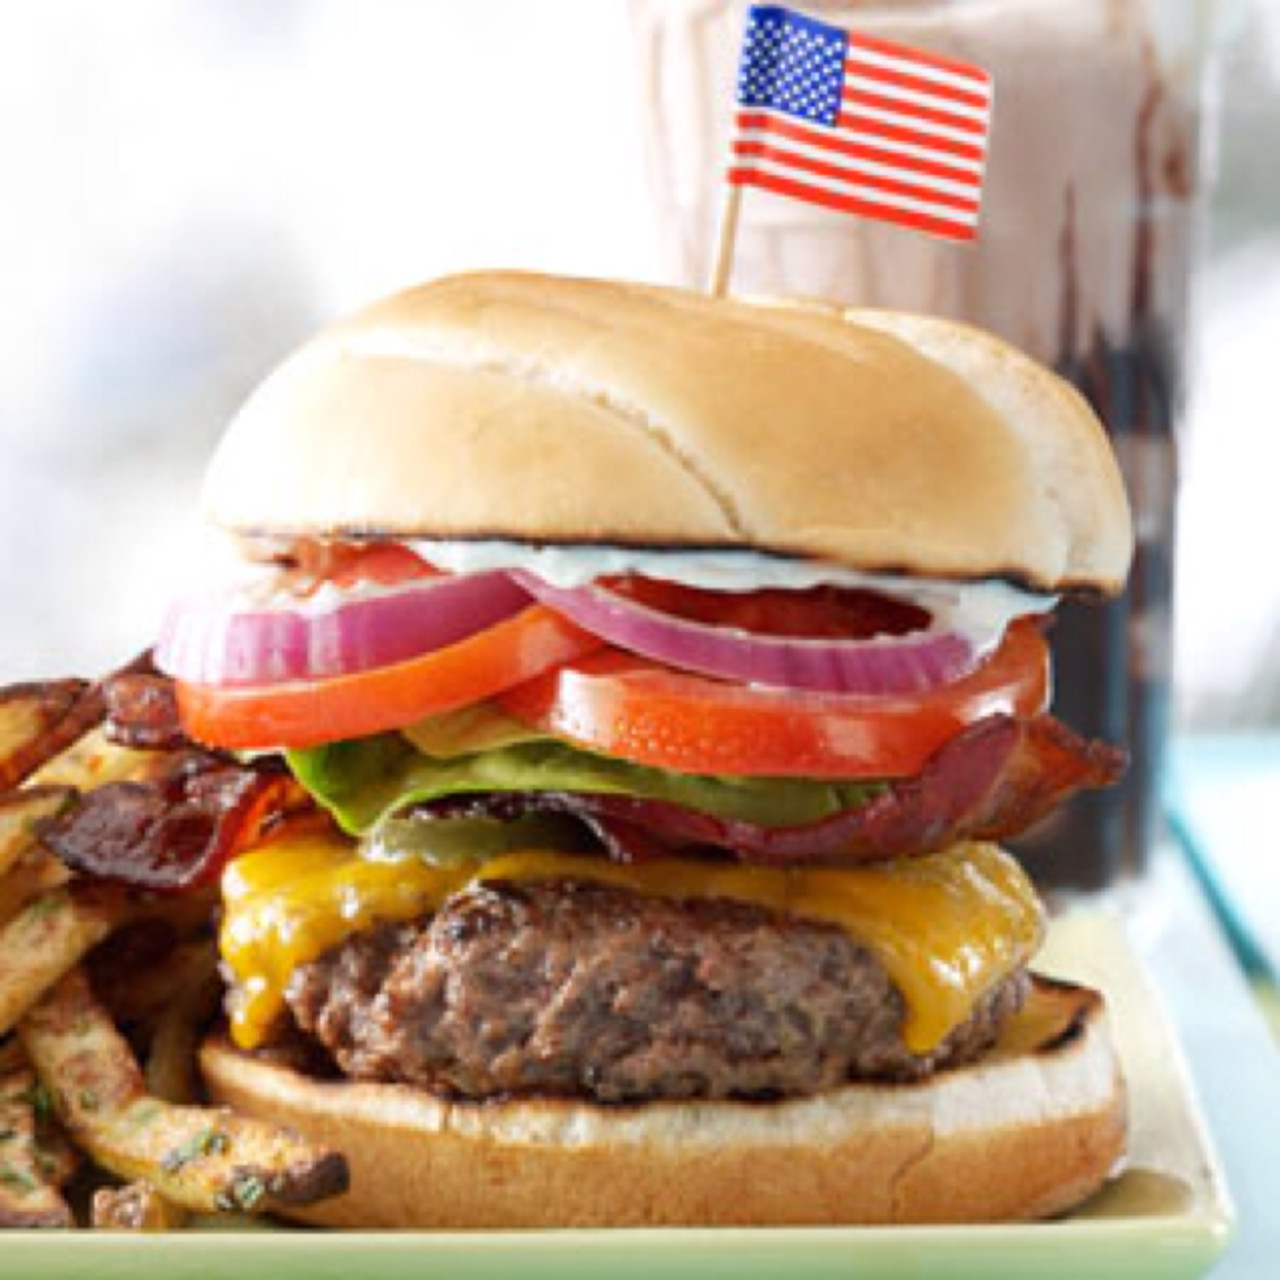 Фаст стране. Американ чизбургер Американ Американ. Бургер. Гамбургер в Америке. Американская кухня блюда.